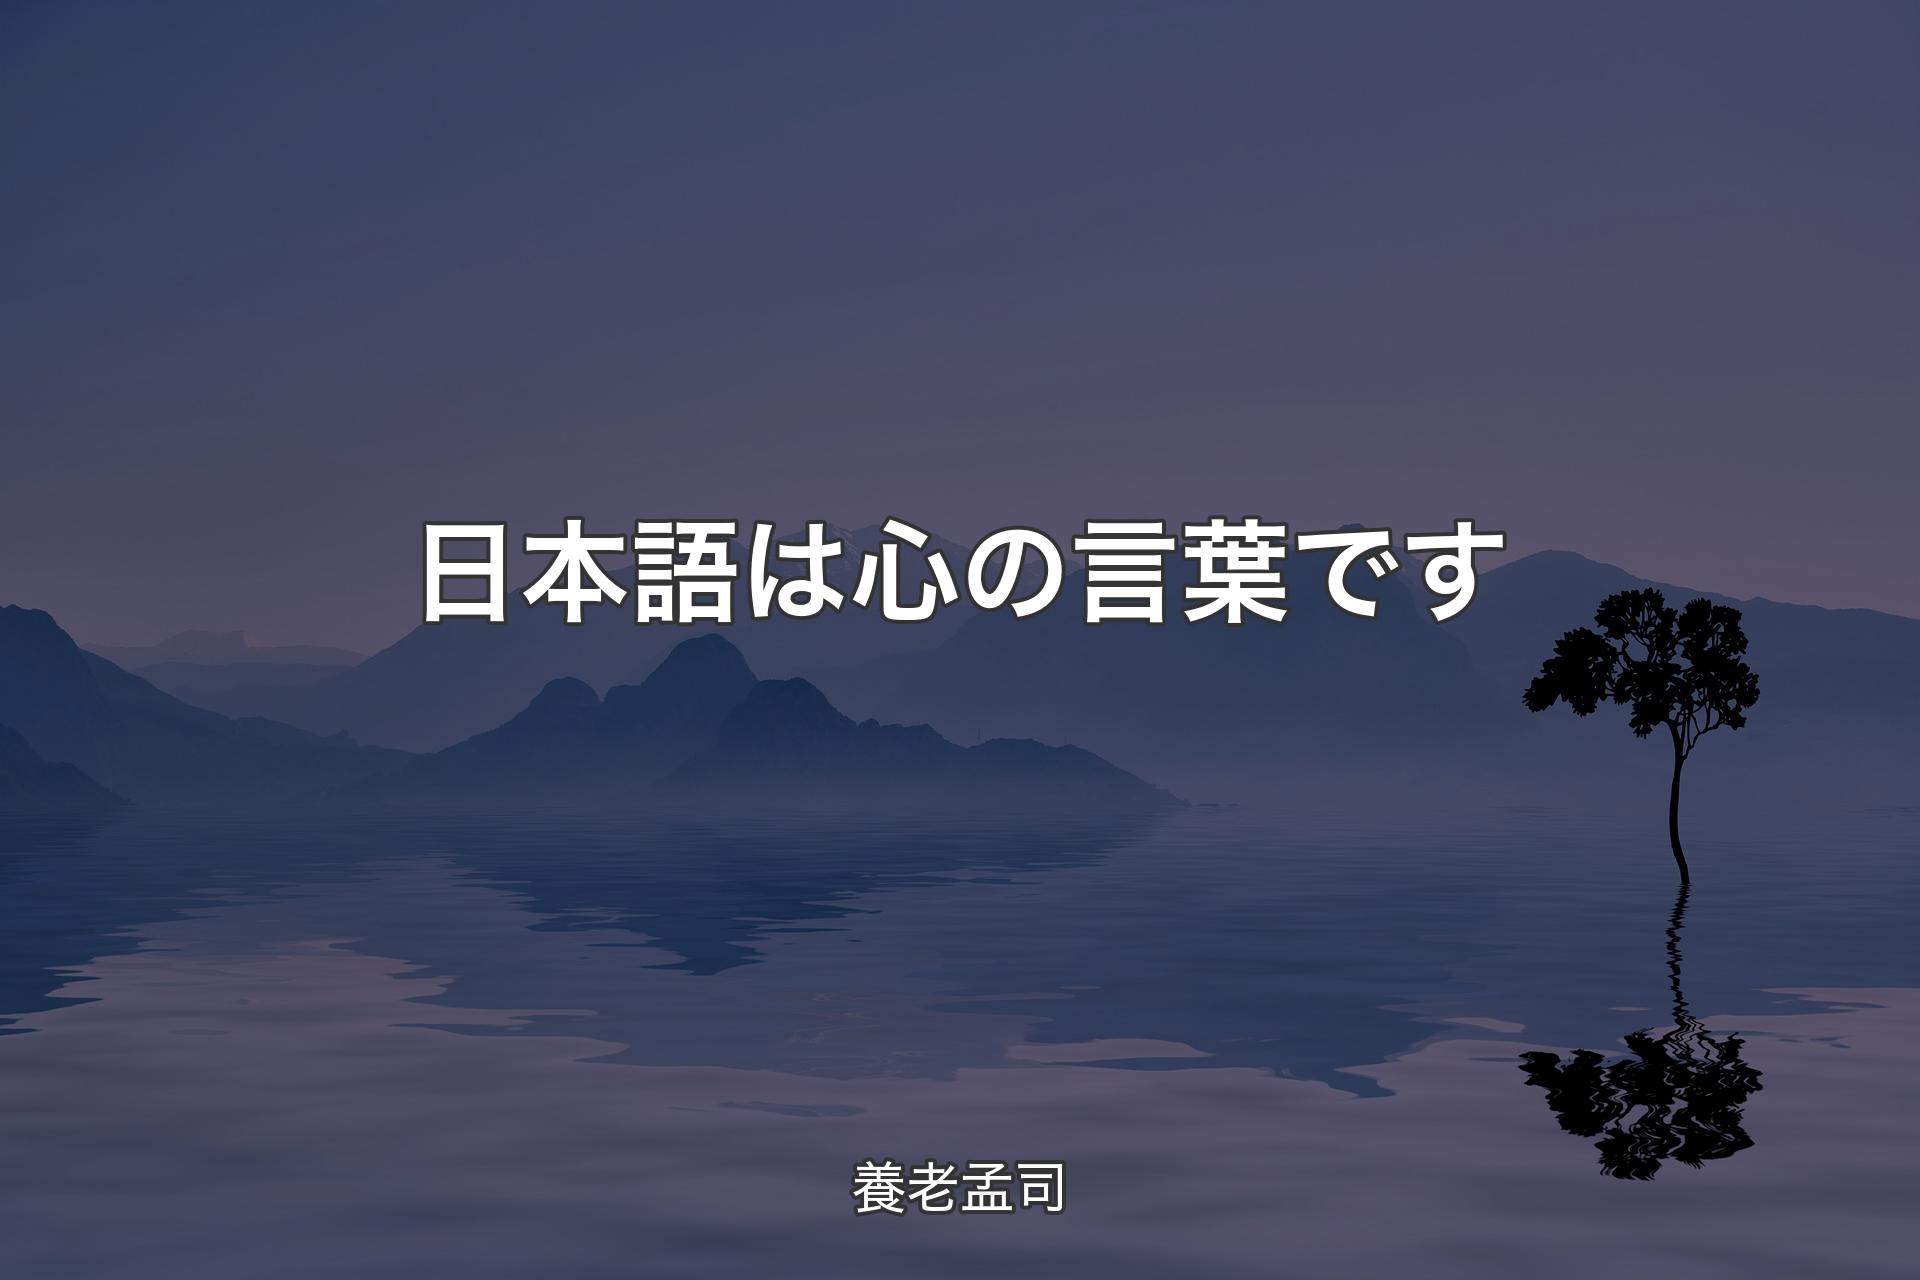 【背景4】日本語は心の言葉です - 養老孟司